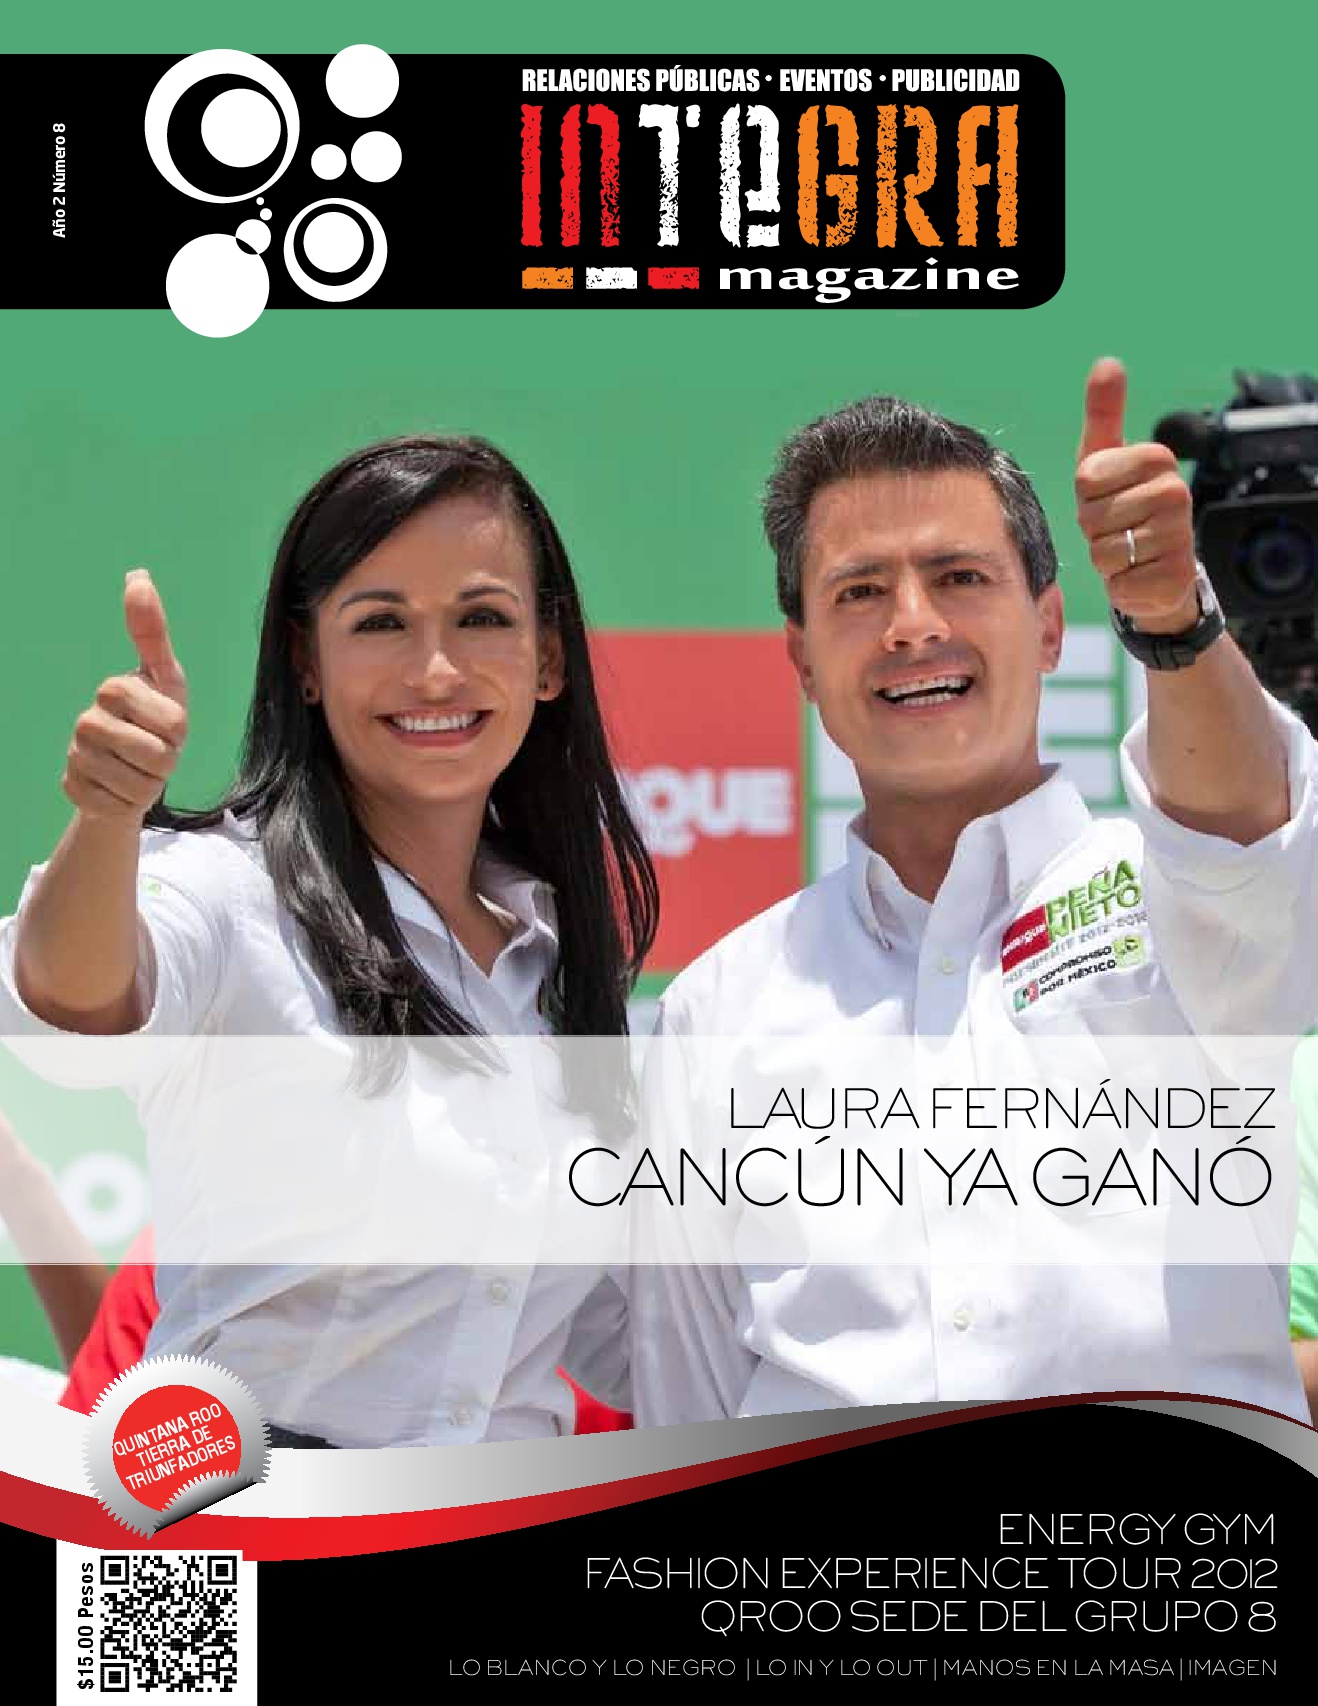 Laura Fernández _ Cancún ya gano